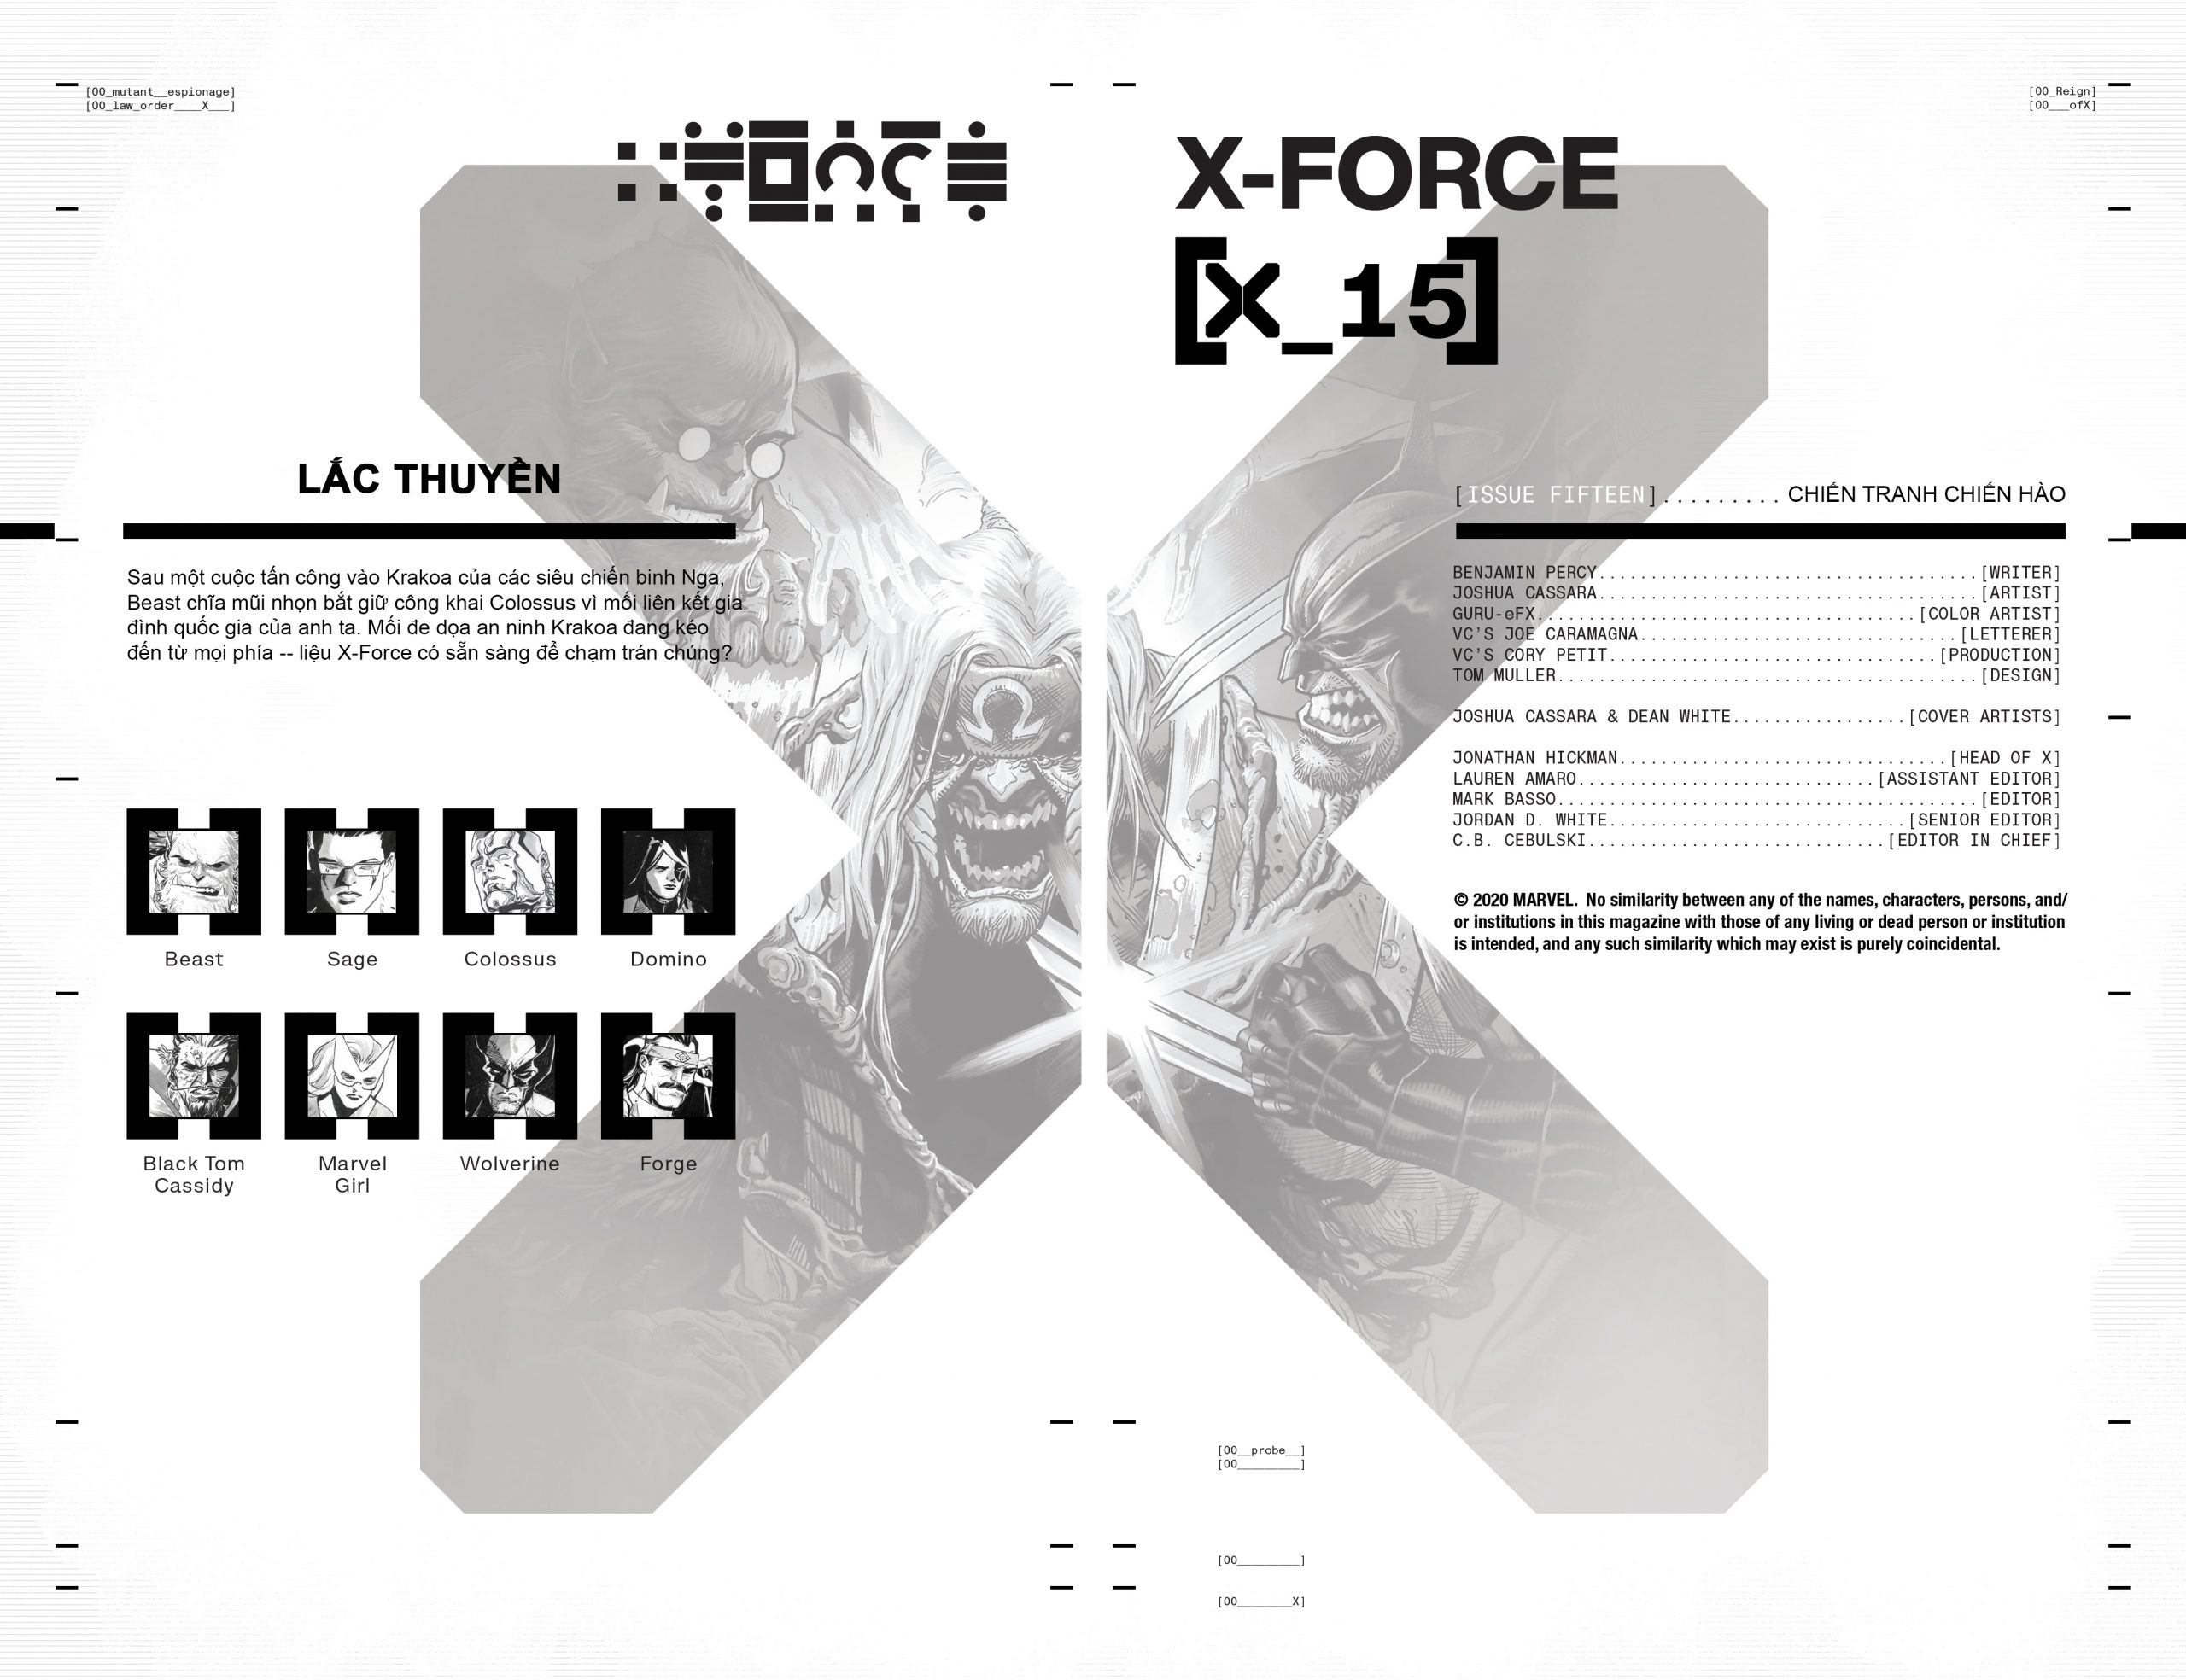 https://langgeek.net/wp-content/uploads/2022/01/X-Force-015-005-scaled.jpg